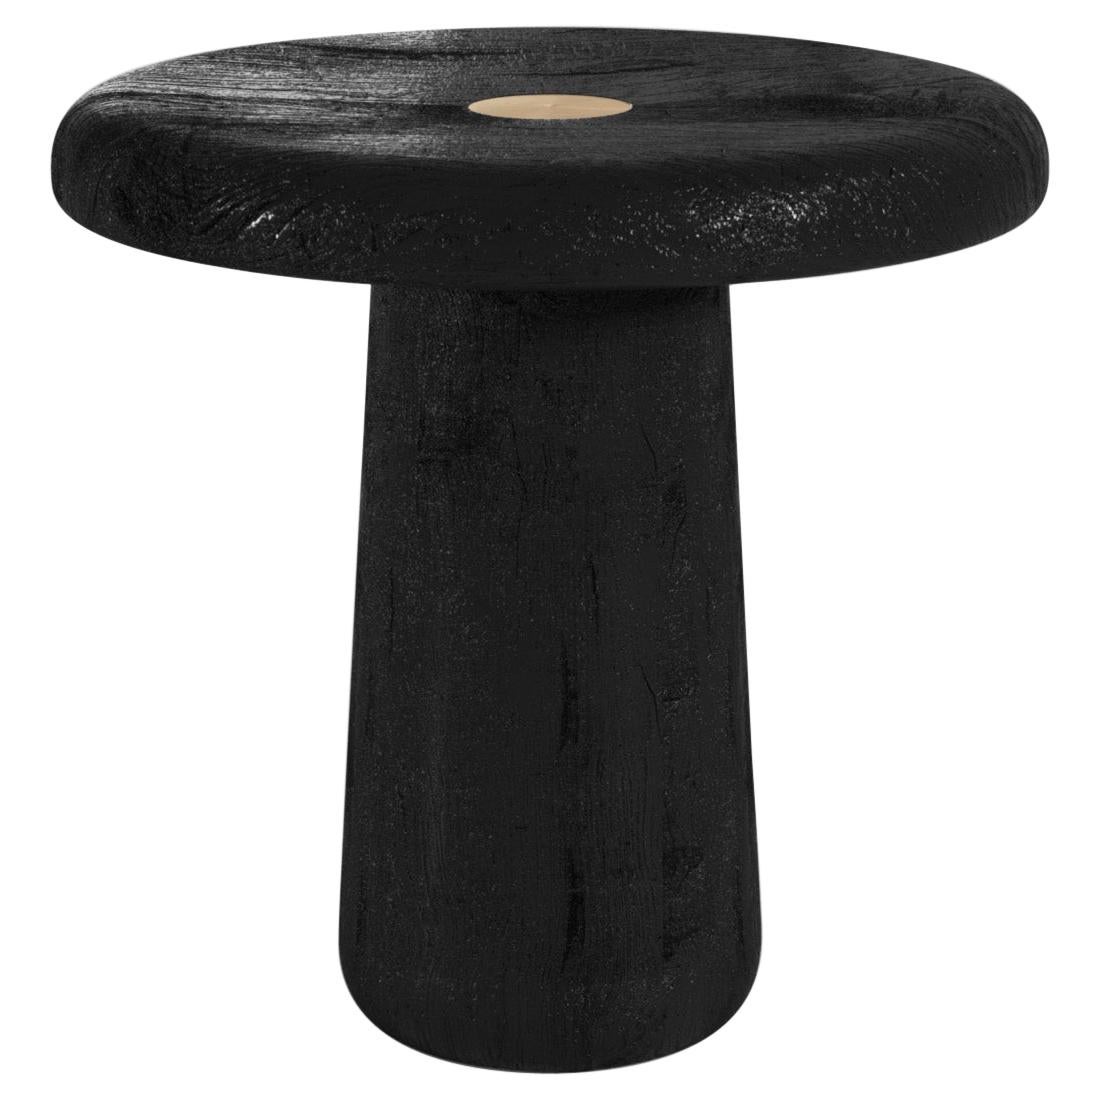 Spore Contemporary Coffee Table Small in Wood Brass by Artefatto Design Studio